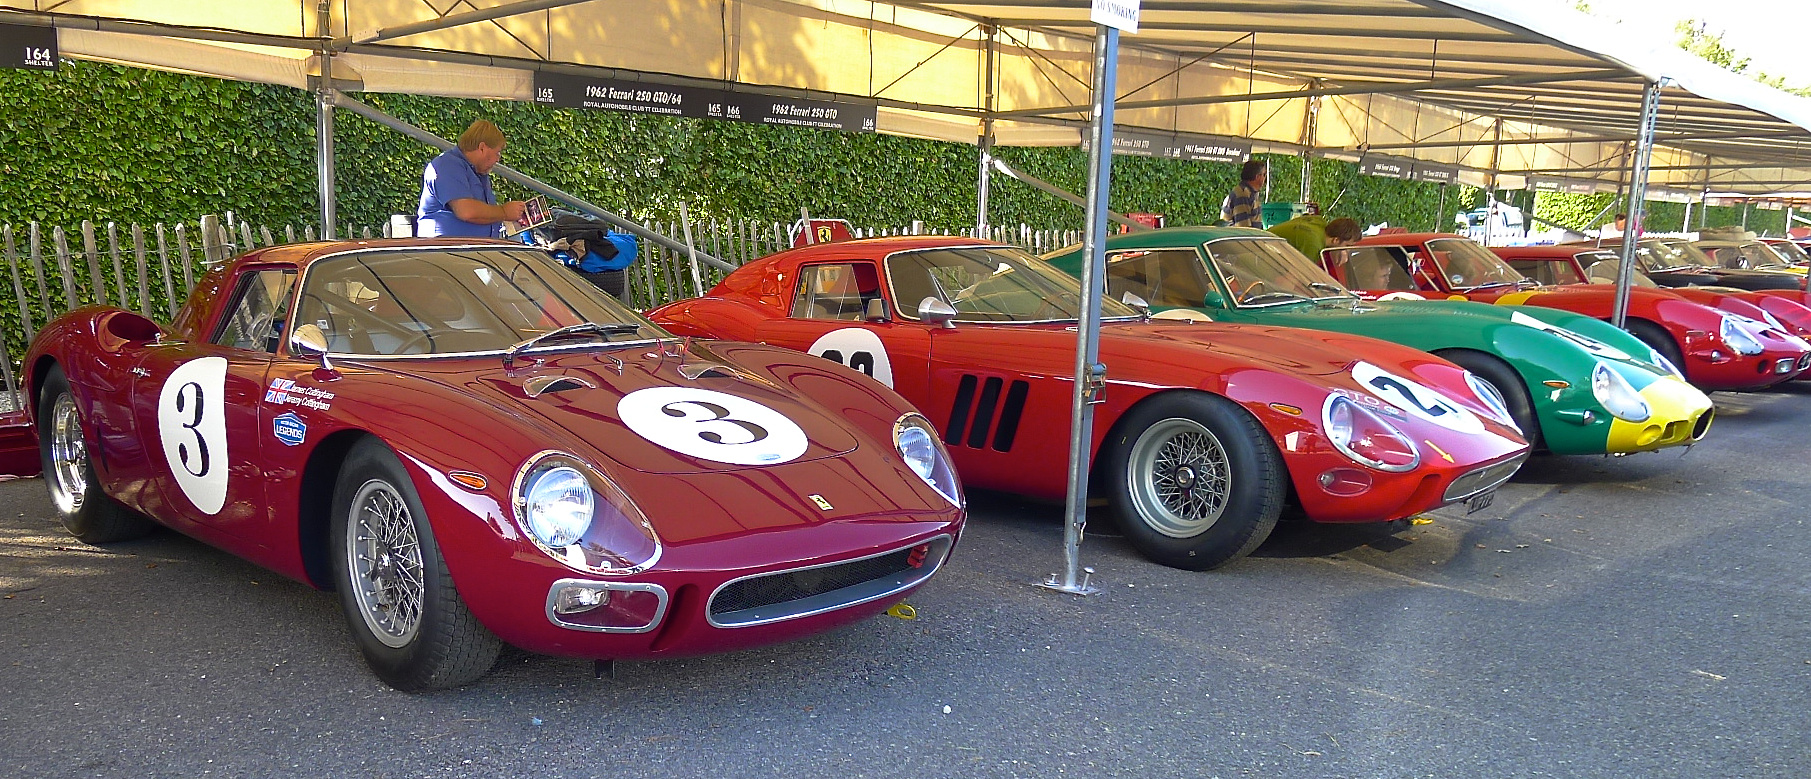 Ferrari Legends at Goodwood...